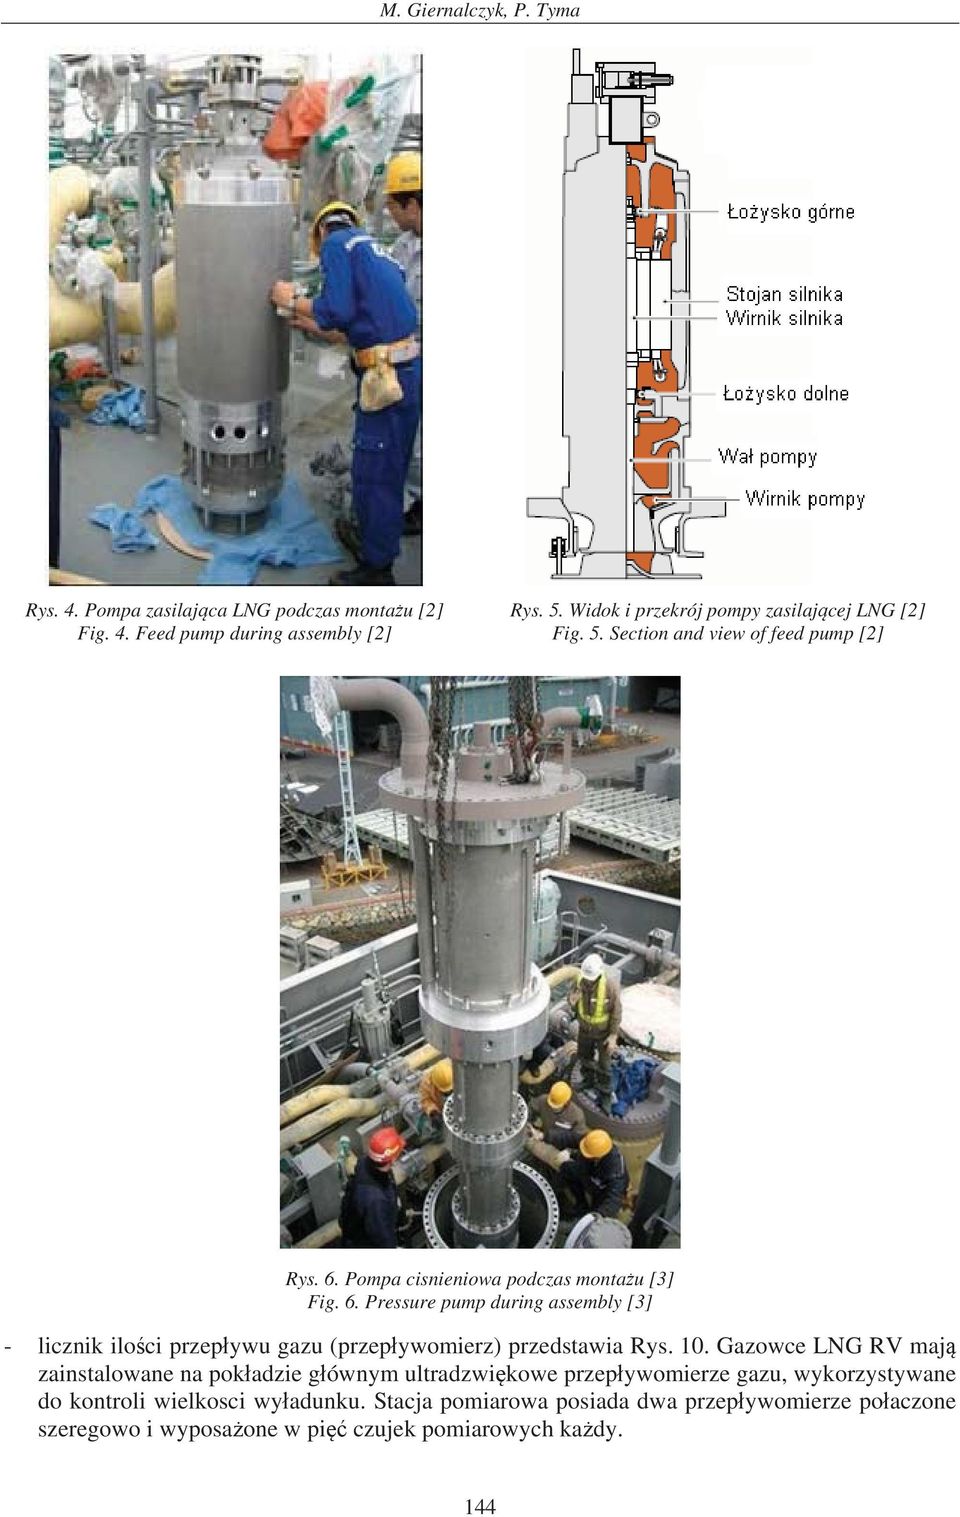 Pompa cisnieniowa podczas monta u [3] Fig. 6. Pressure pump during assembly [3] - licznik ilo ci przep ywu gazu (przep ywomierz) przedstawia Rys. 10.